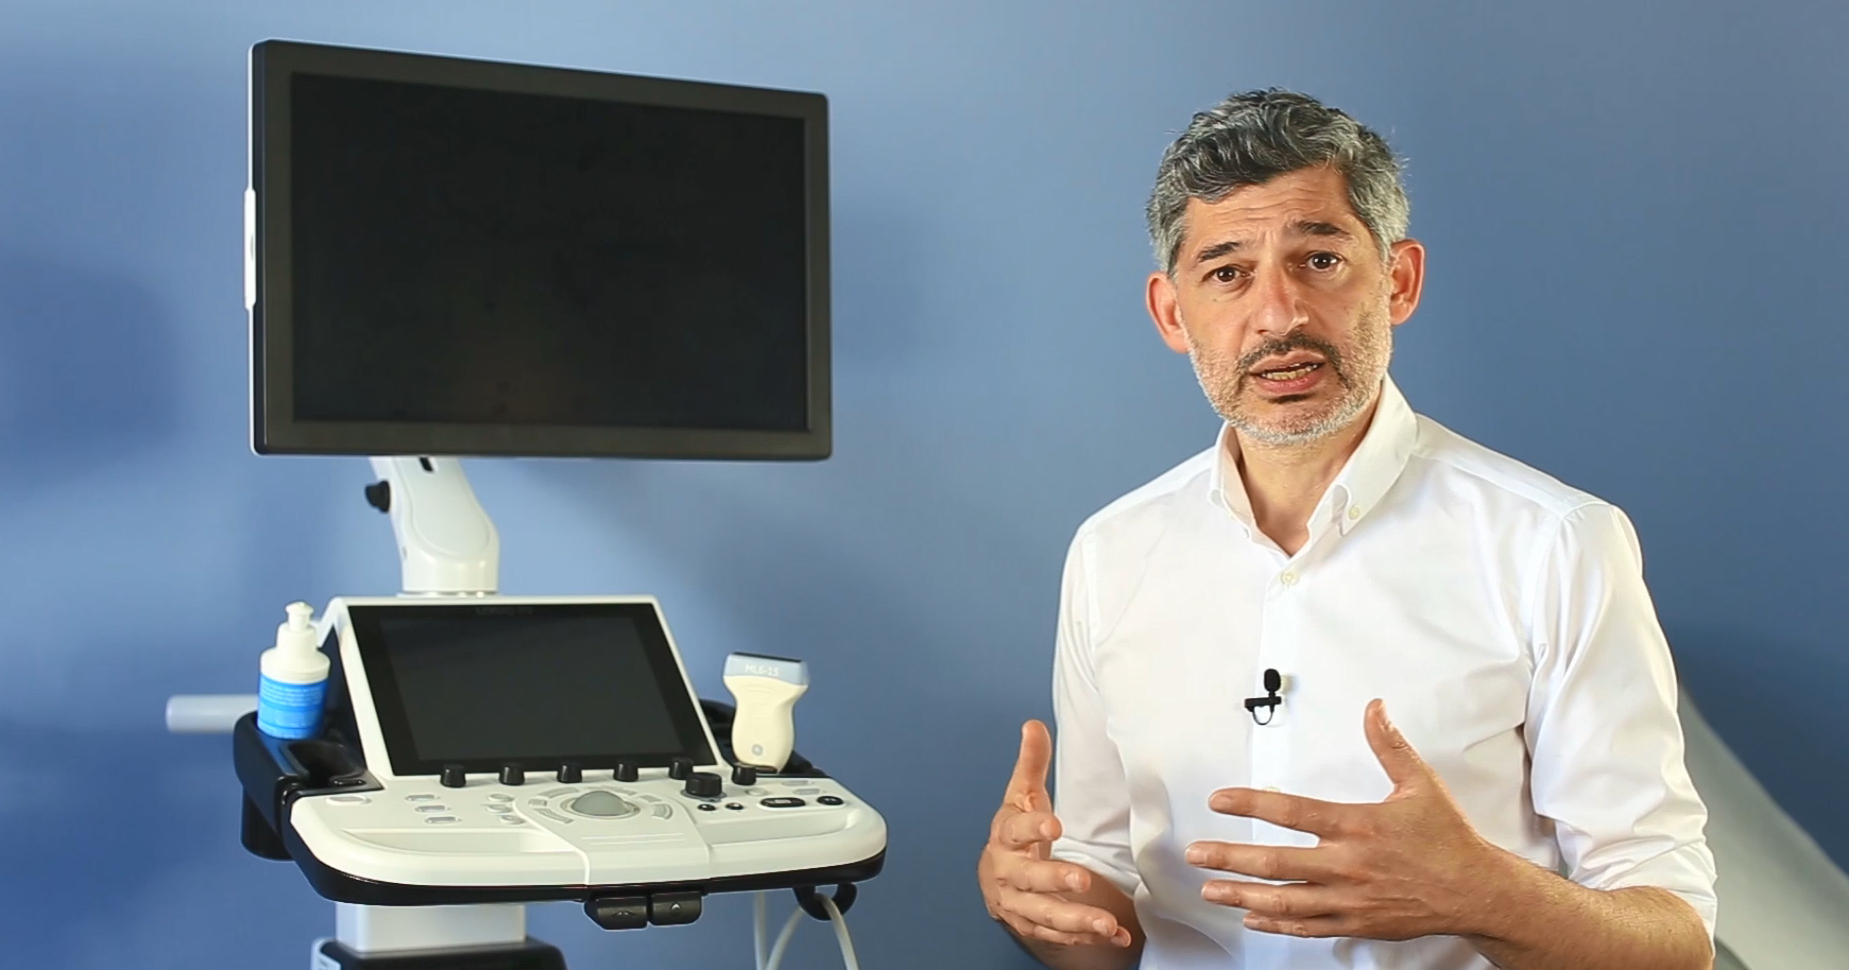 Mann in weißem Hemd vor Ultraschallgerät mit Monitor im Hintergrund.